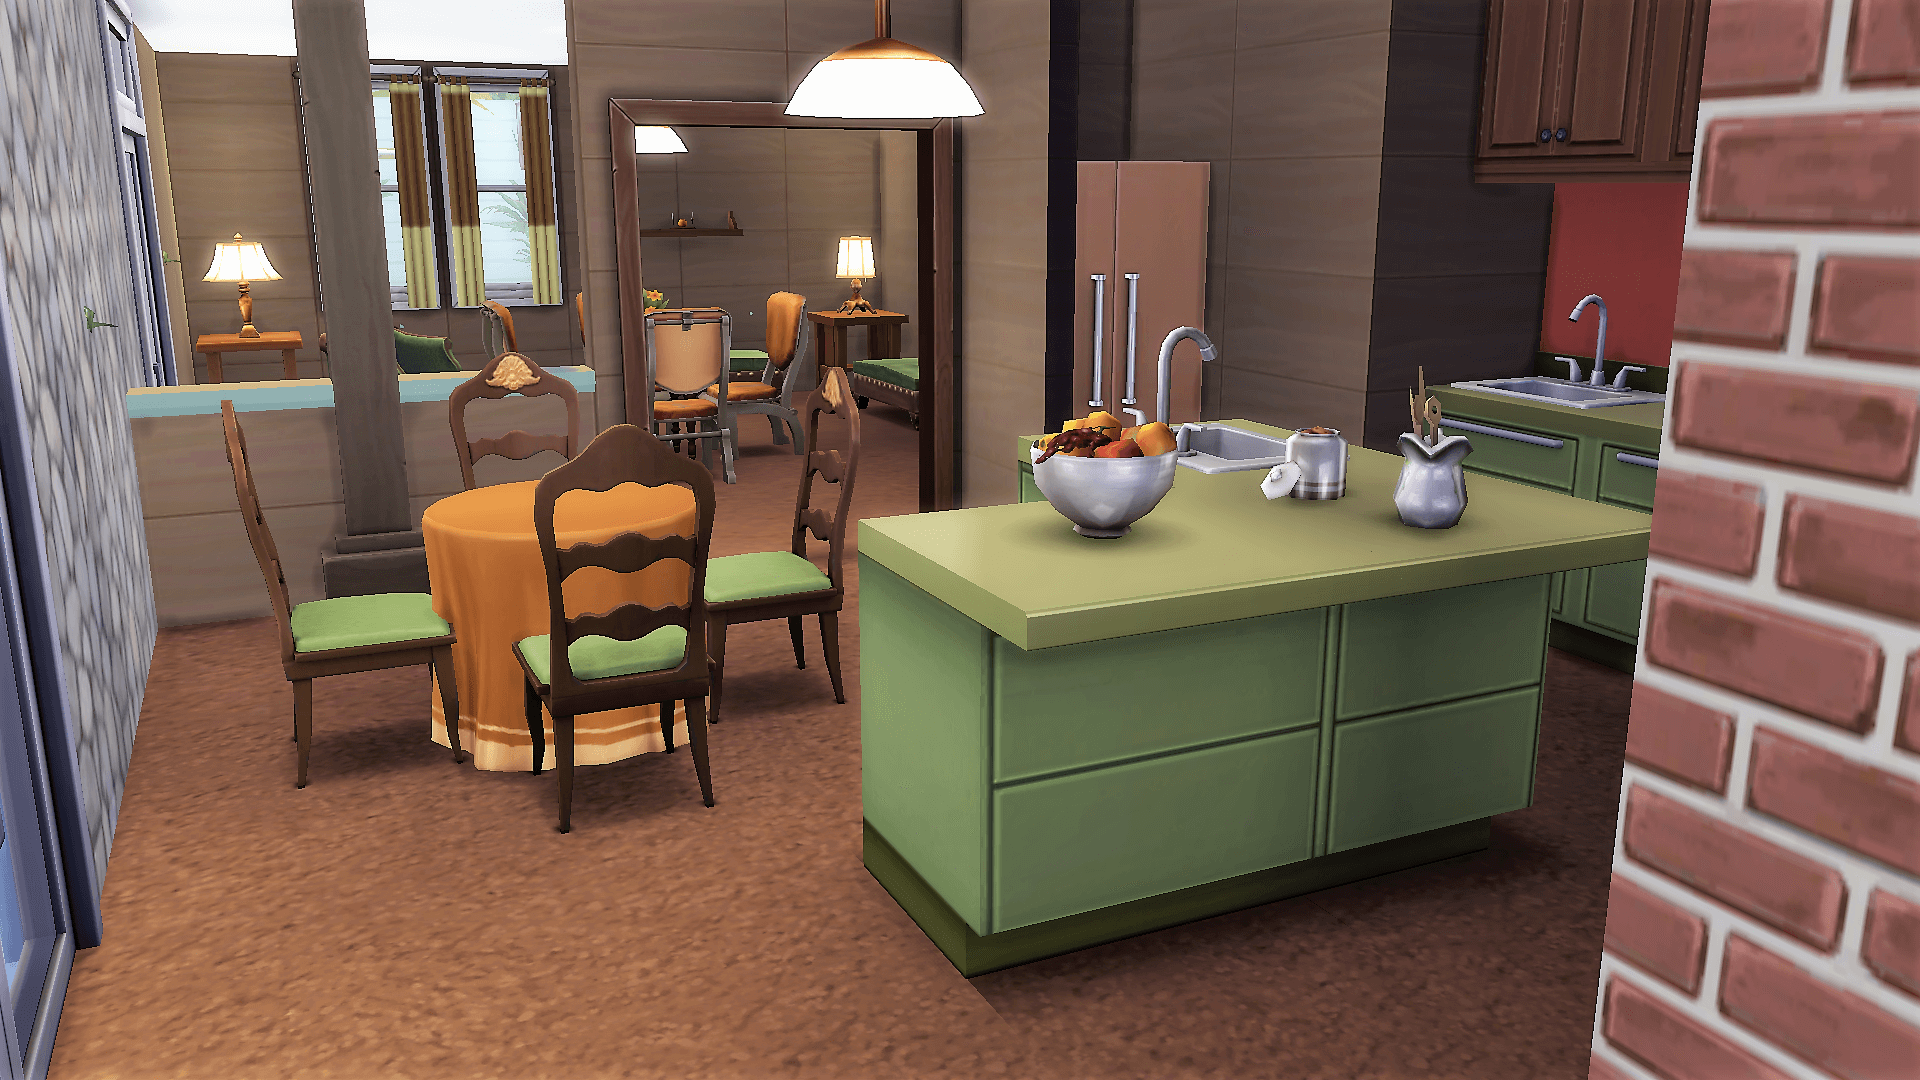 Mod The Sims Brady Bunch House